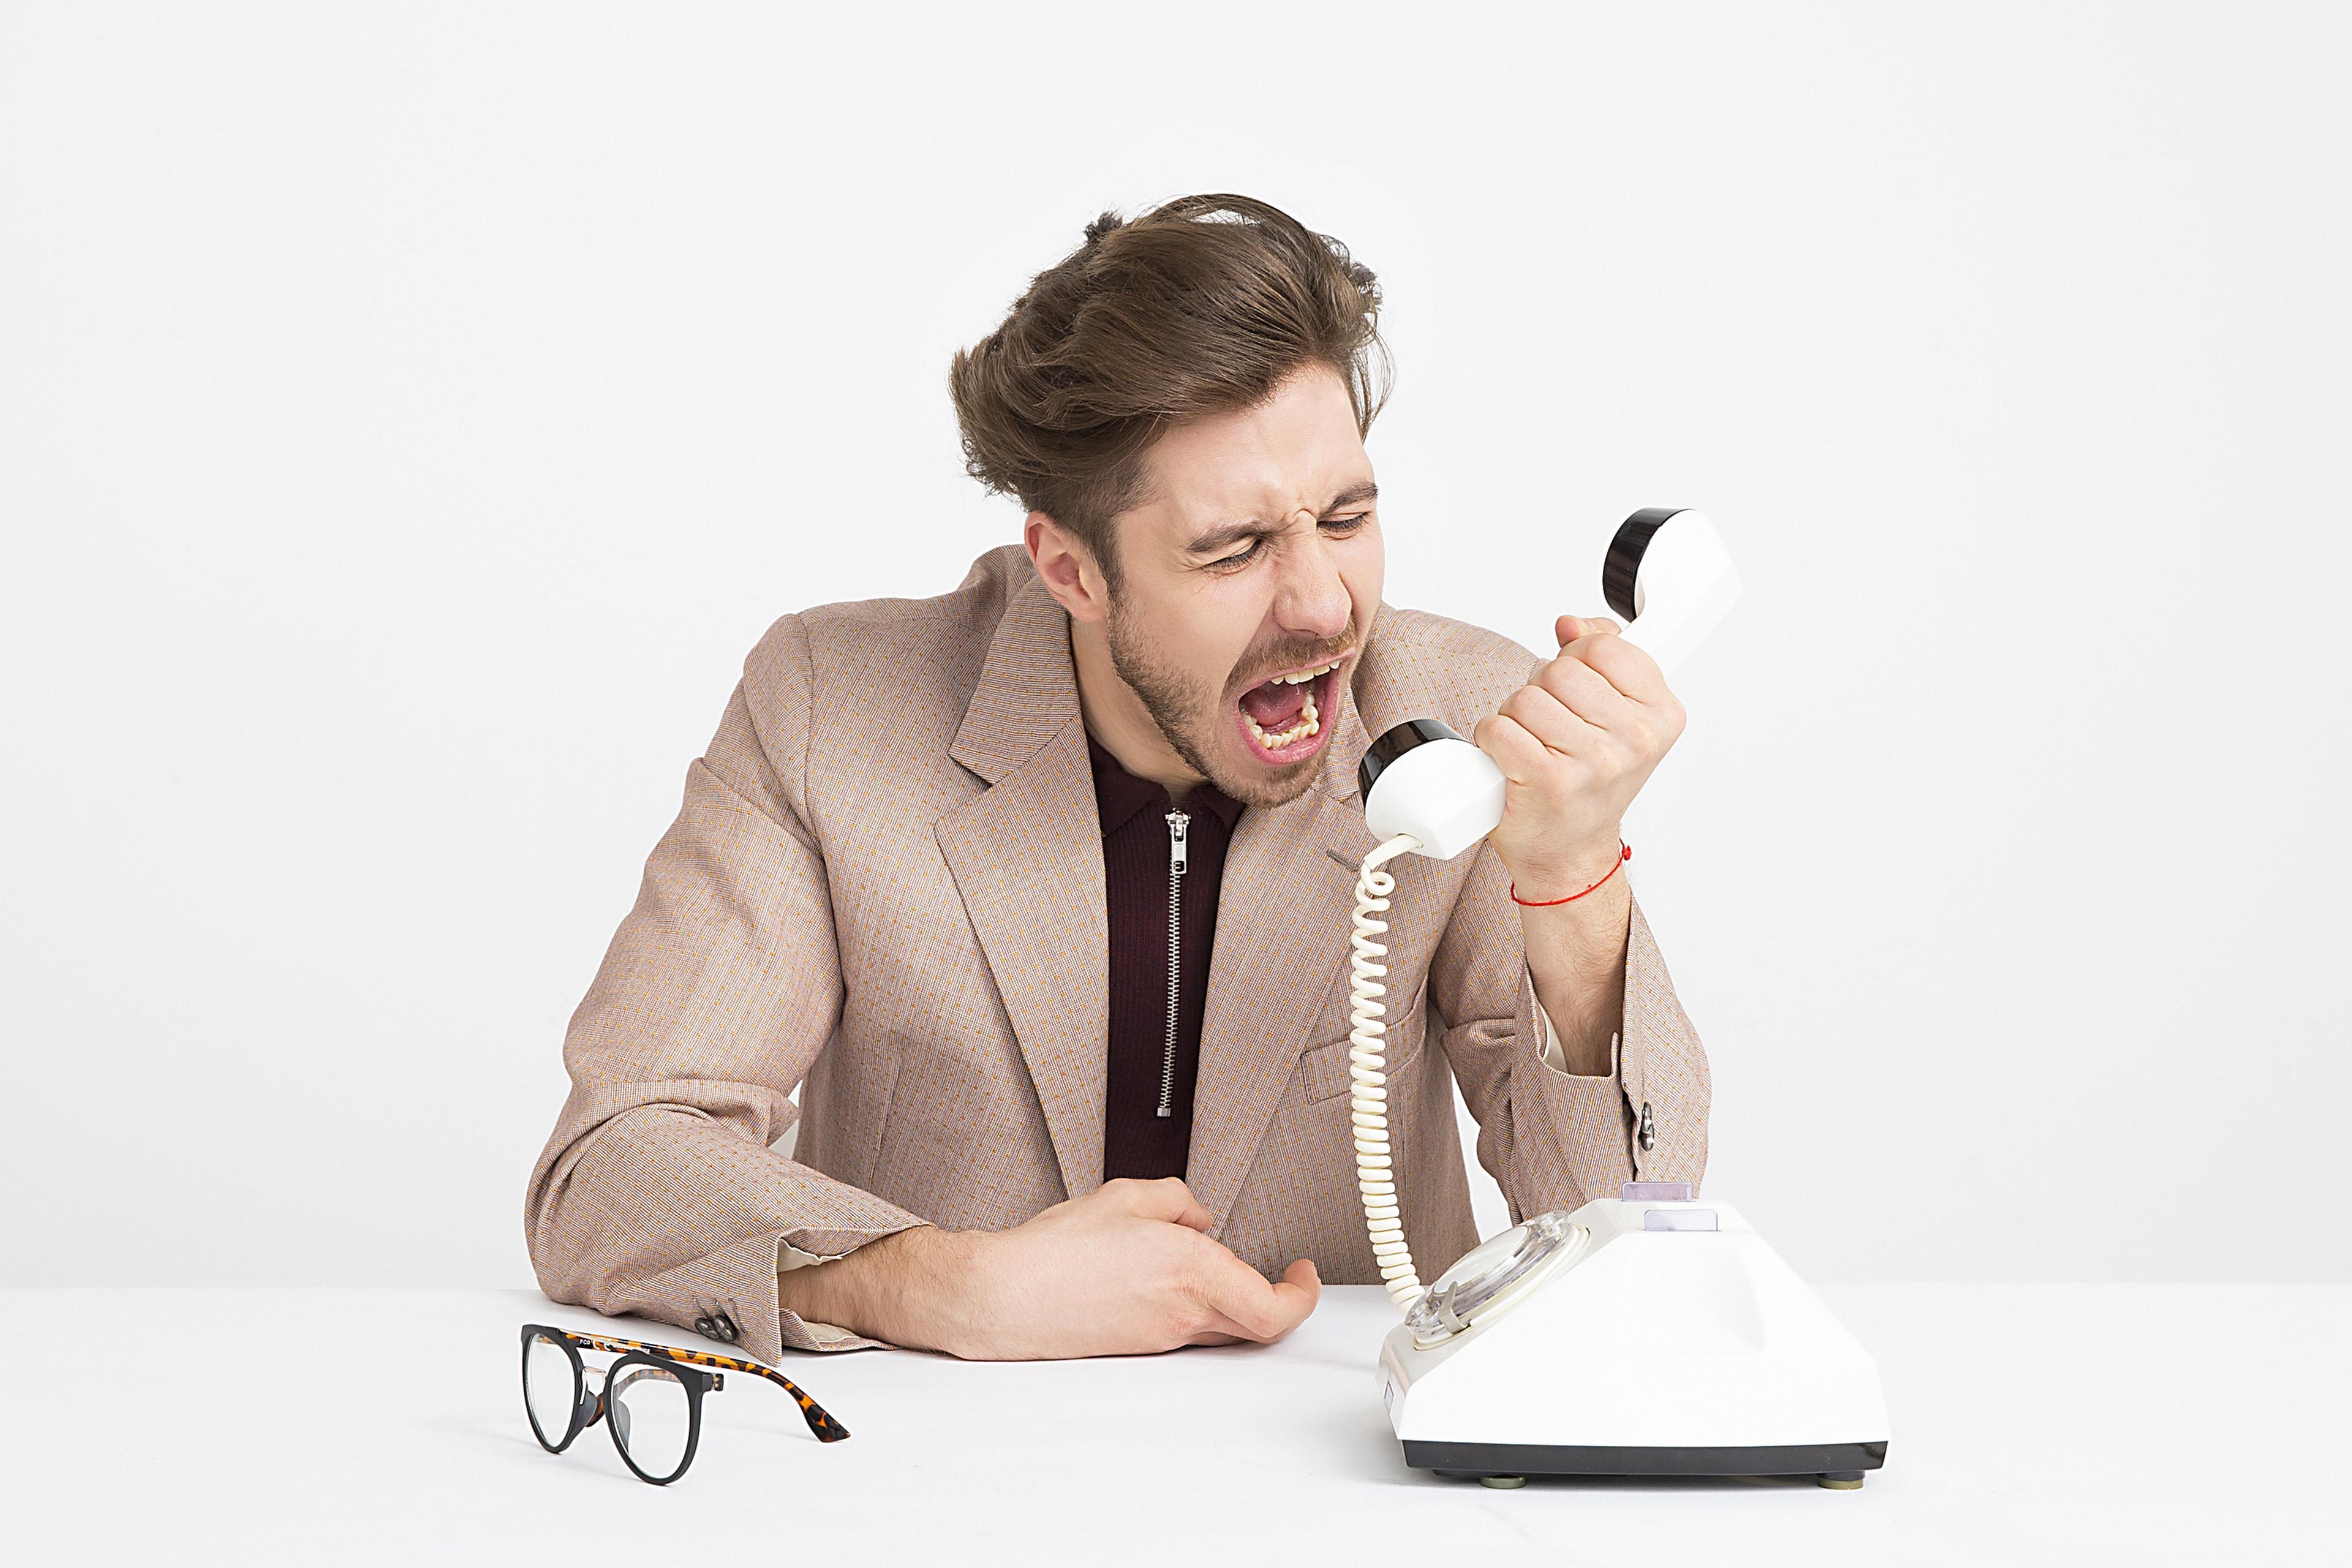 Telephone exchange customer angry